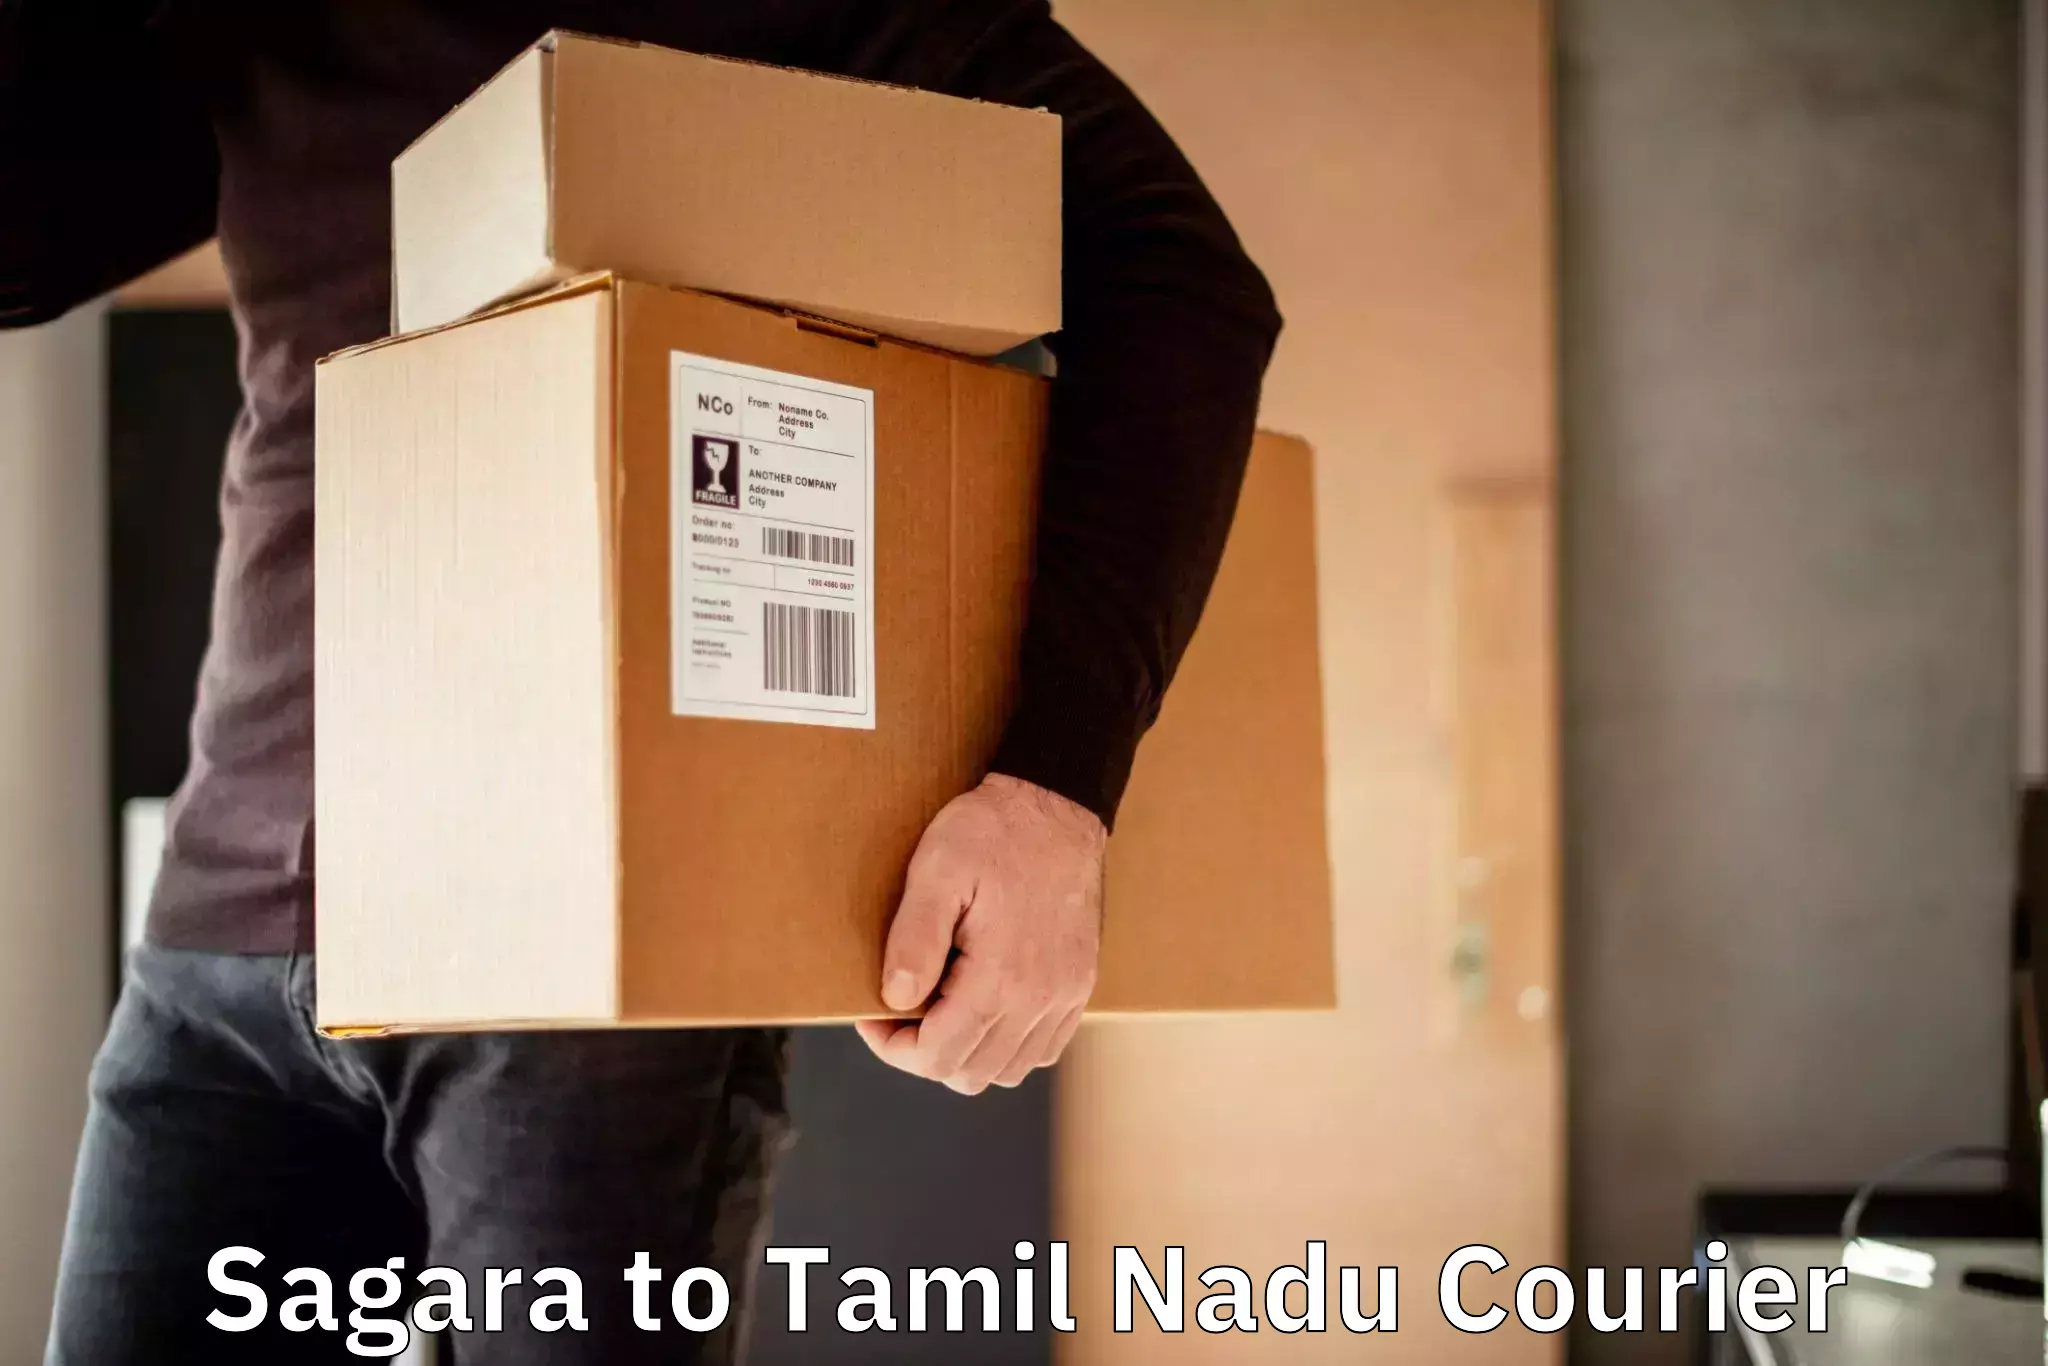 Digital courier platforms Sagara to University of Madras Chennai